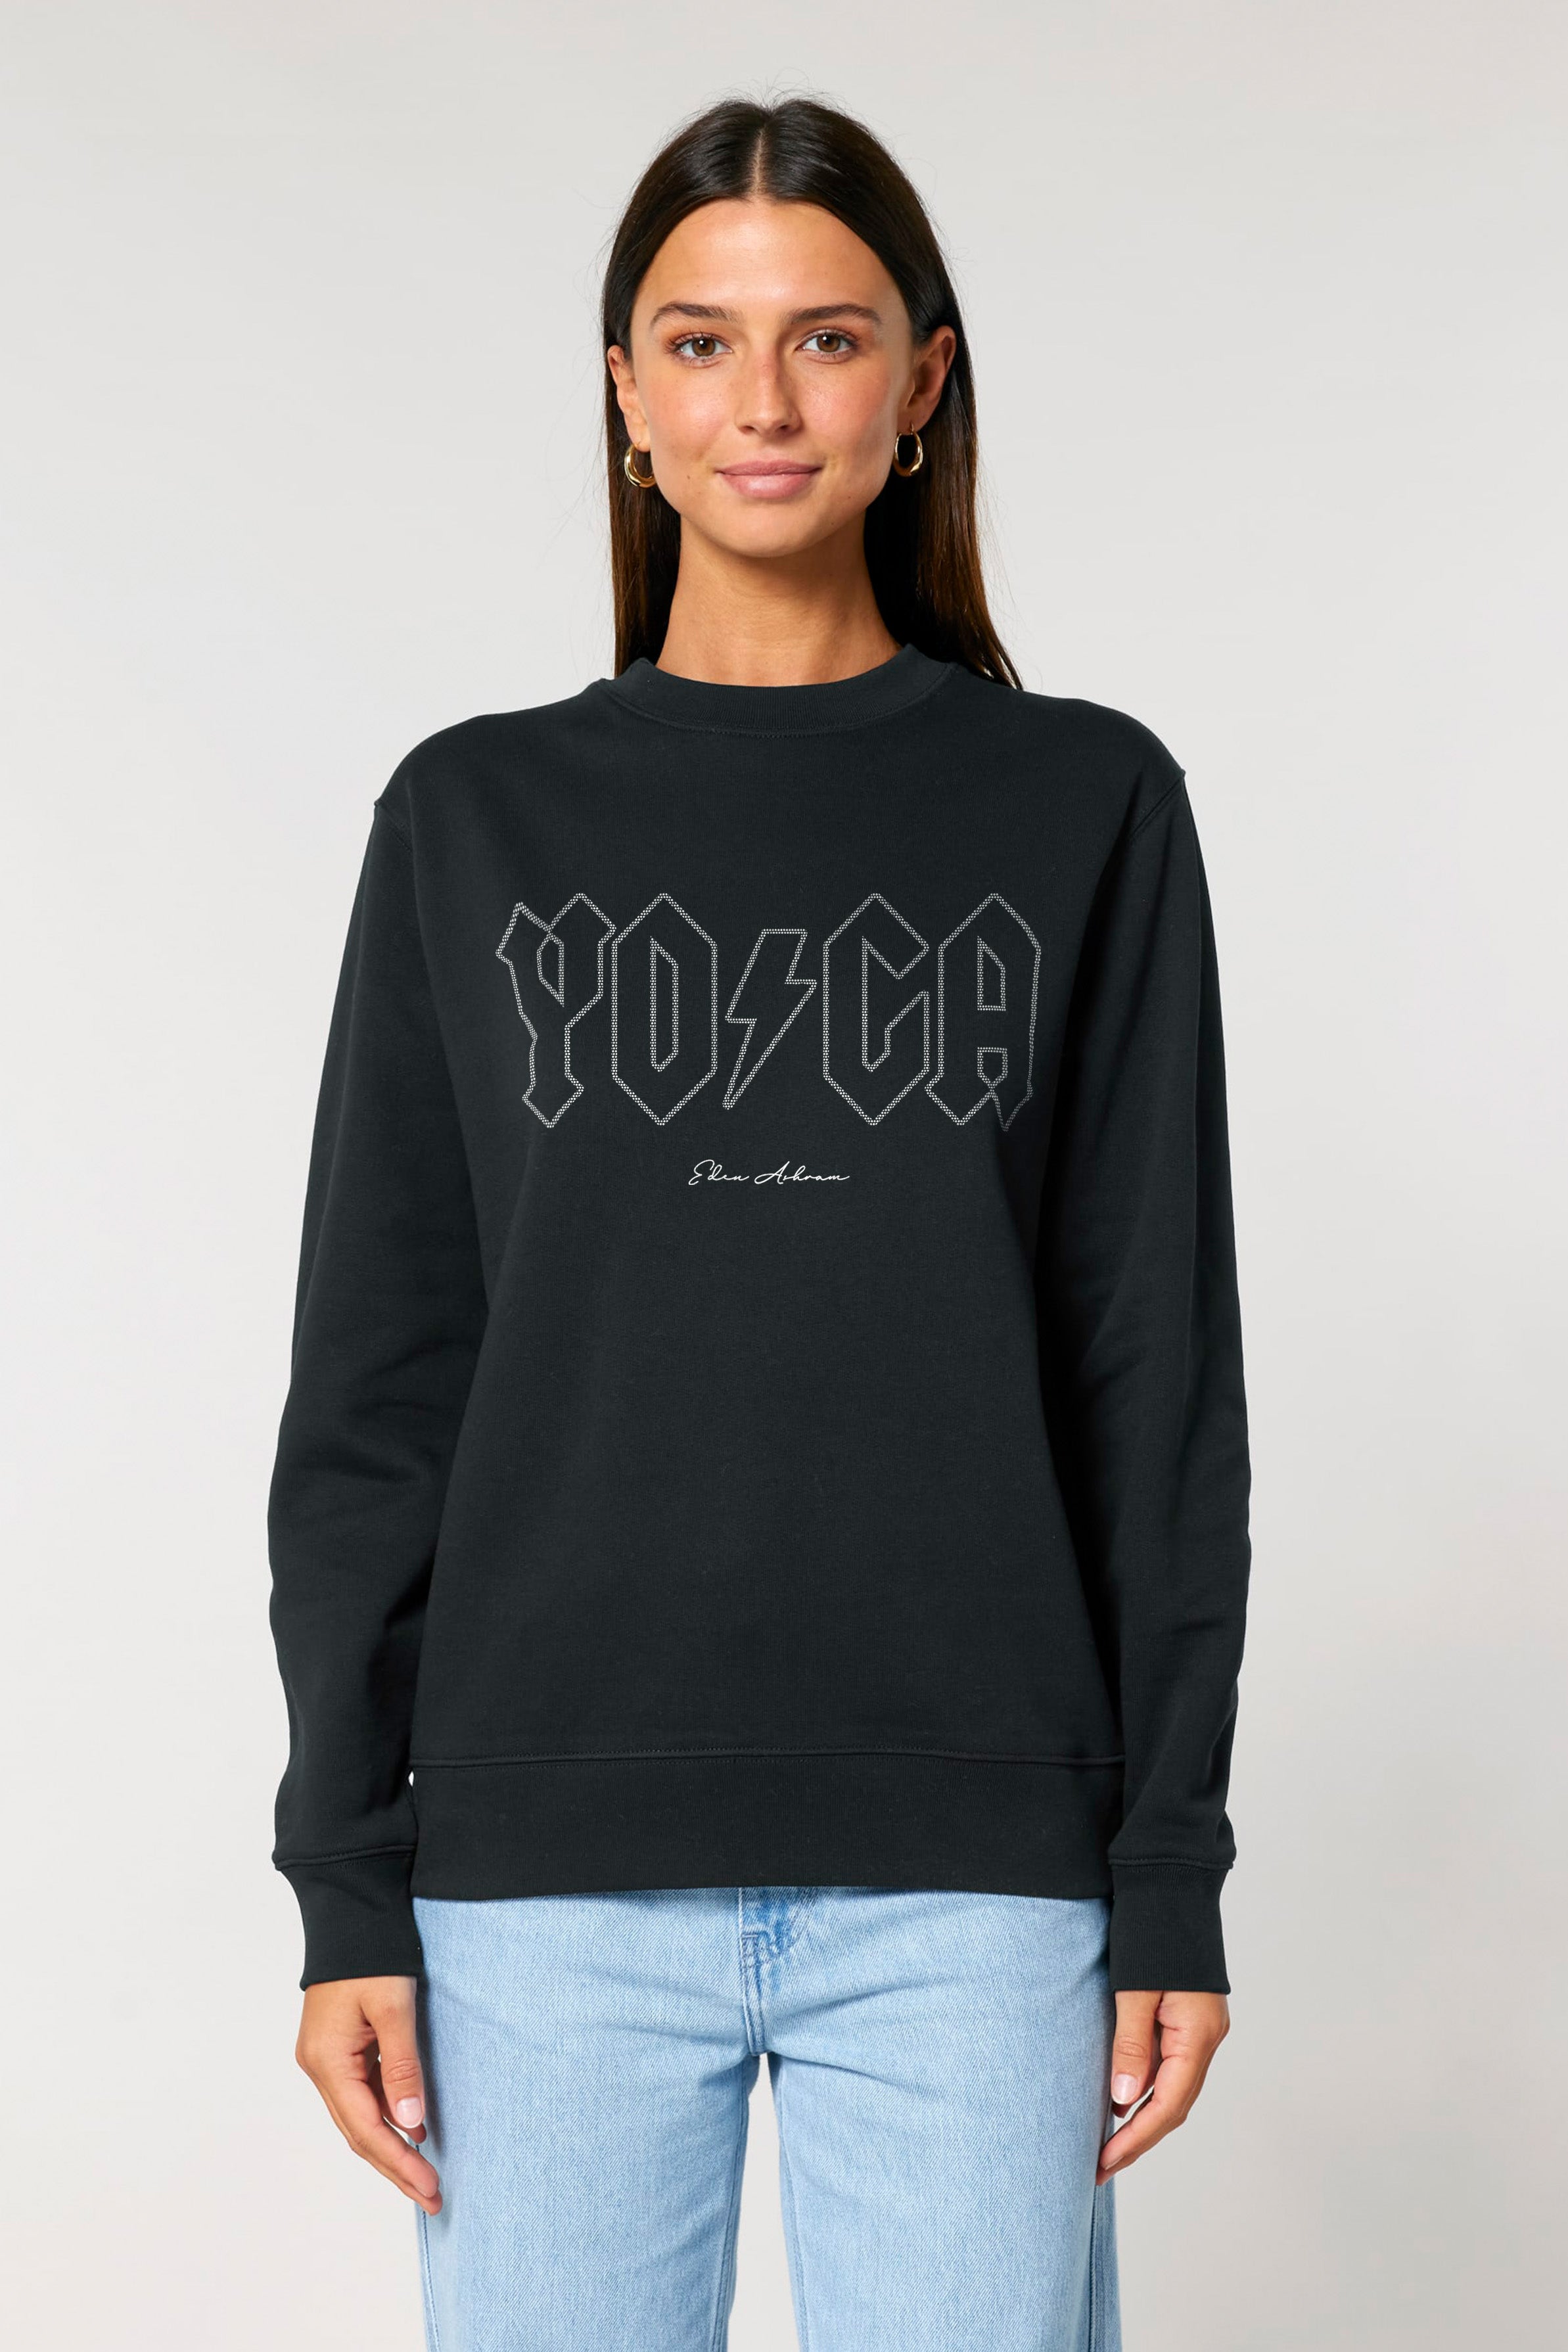 Yoga Tour Ultimate Organic Sweatshirt